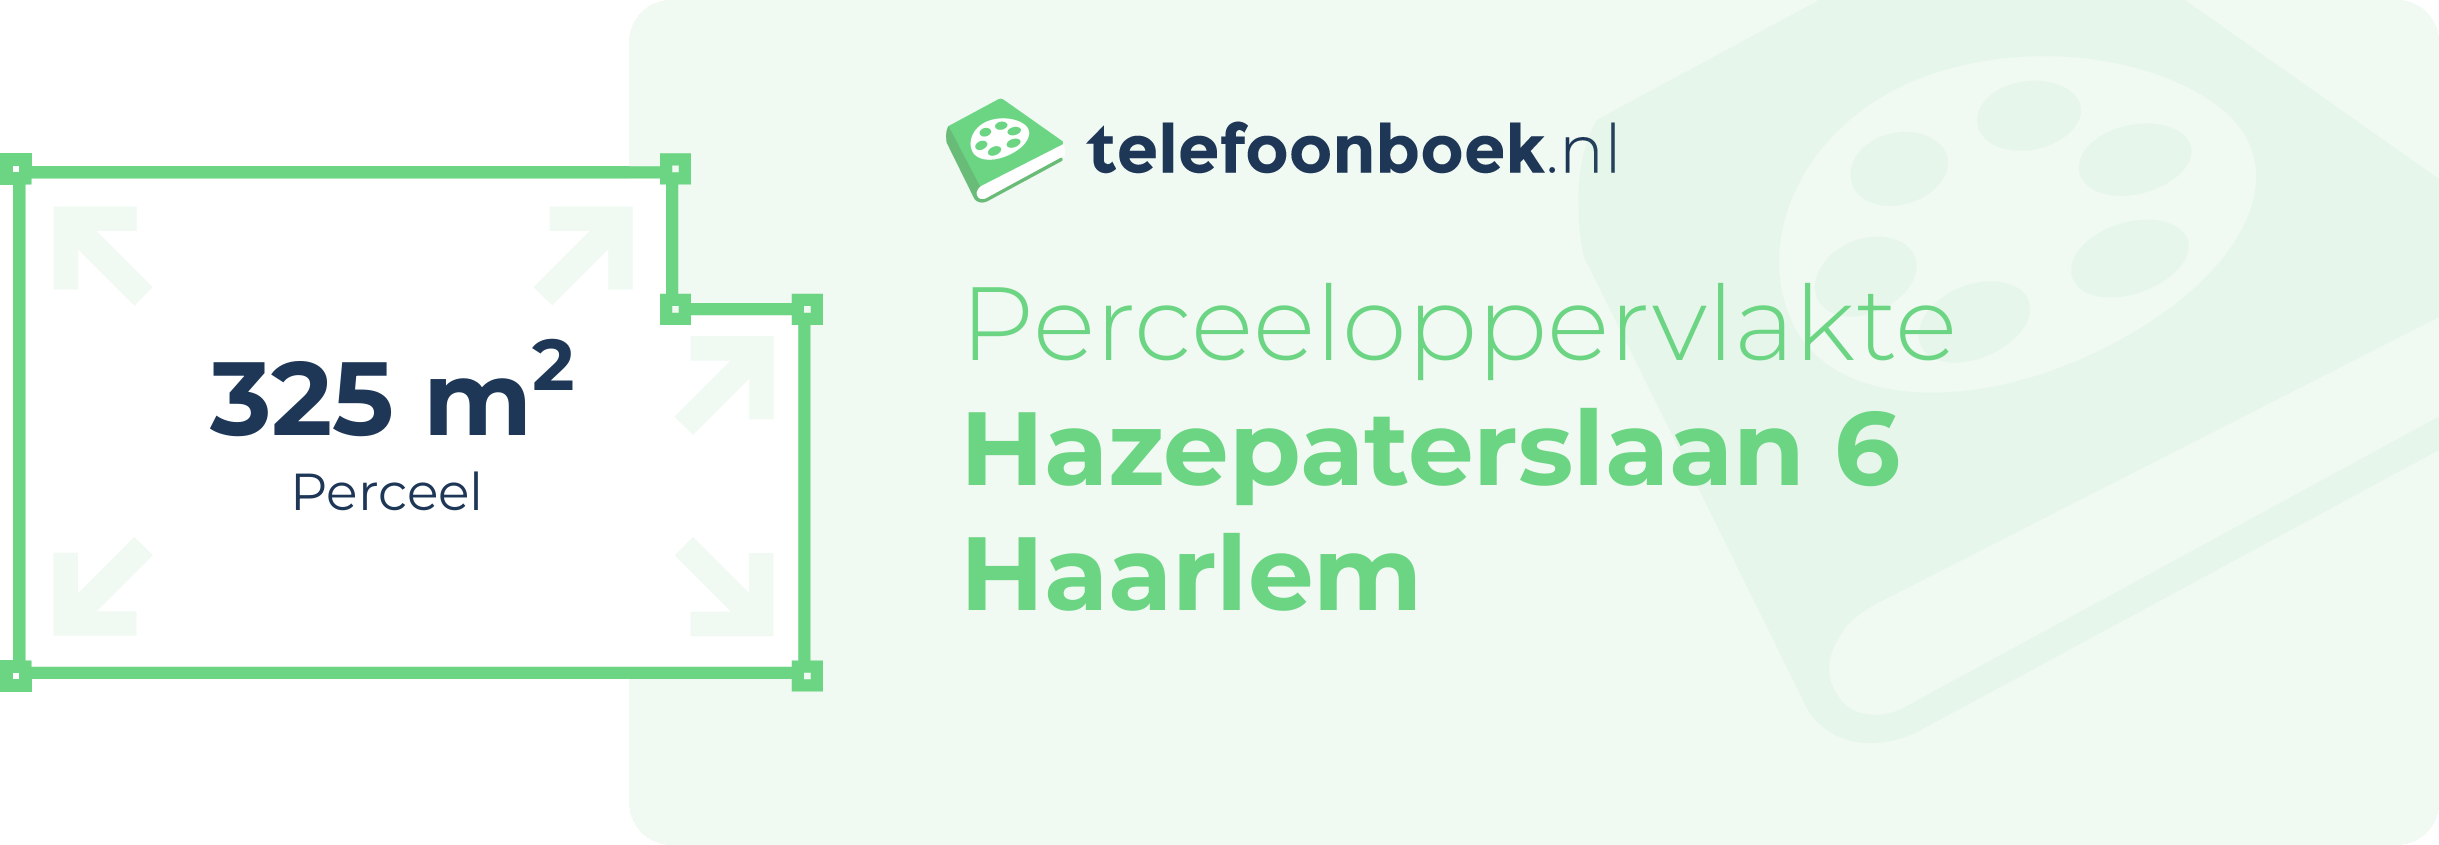 Perceeloppervlakte Hazepaterslaan 6 Haarlem